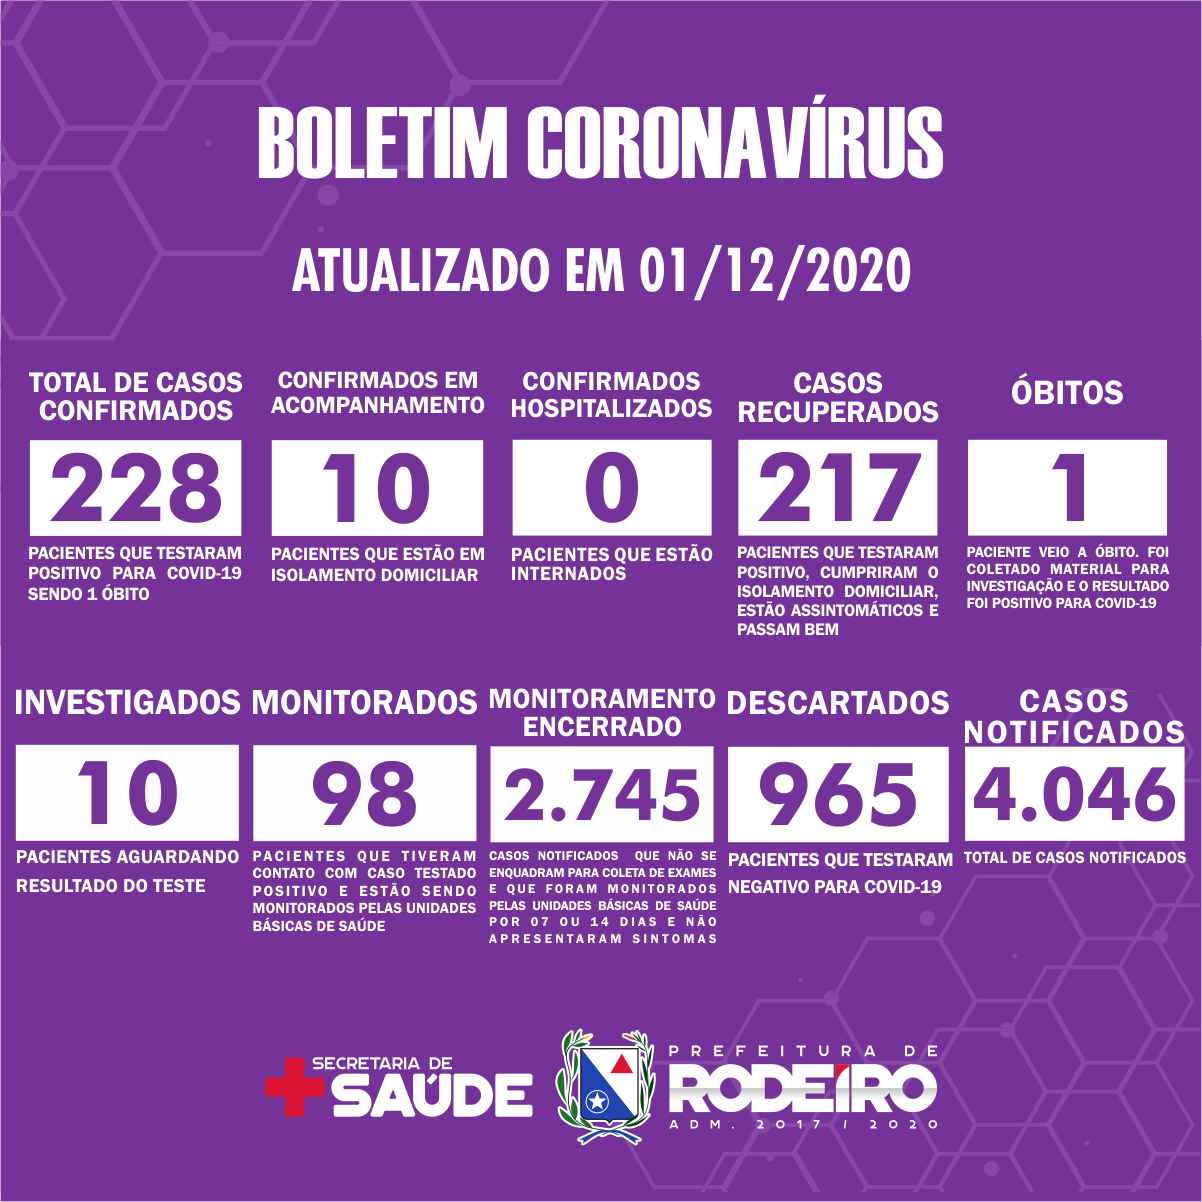 Boletim Epidemiológico do Município de Rodeiro sobre coronavírus, atualizado em 01/12/2020